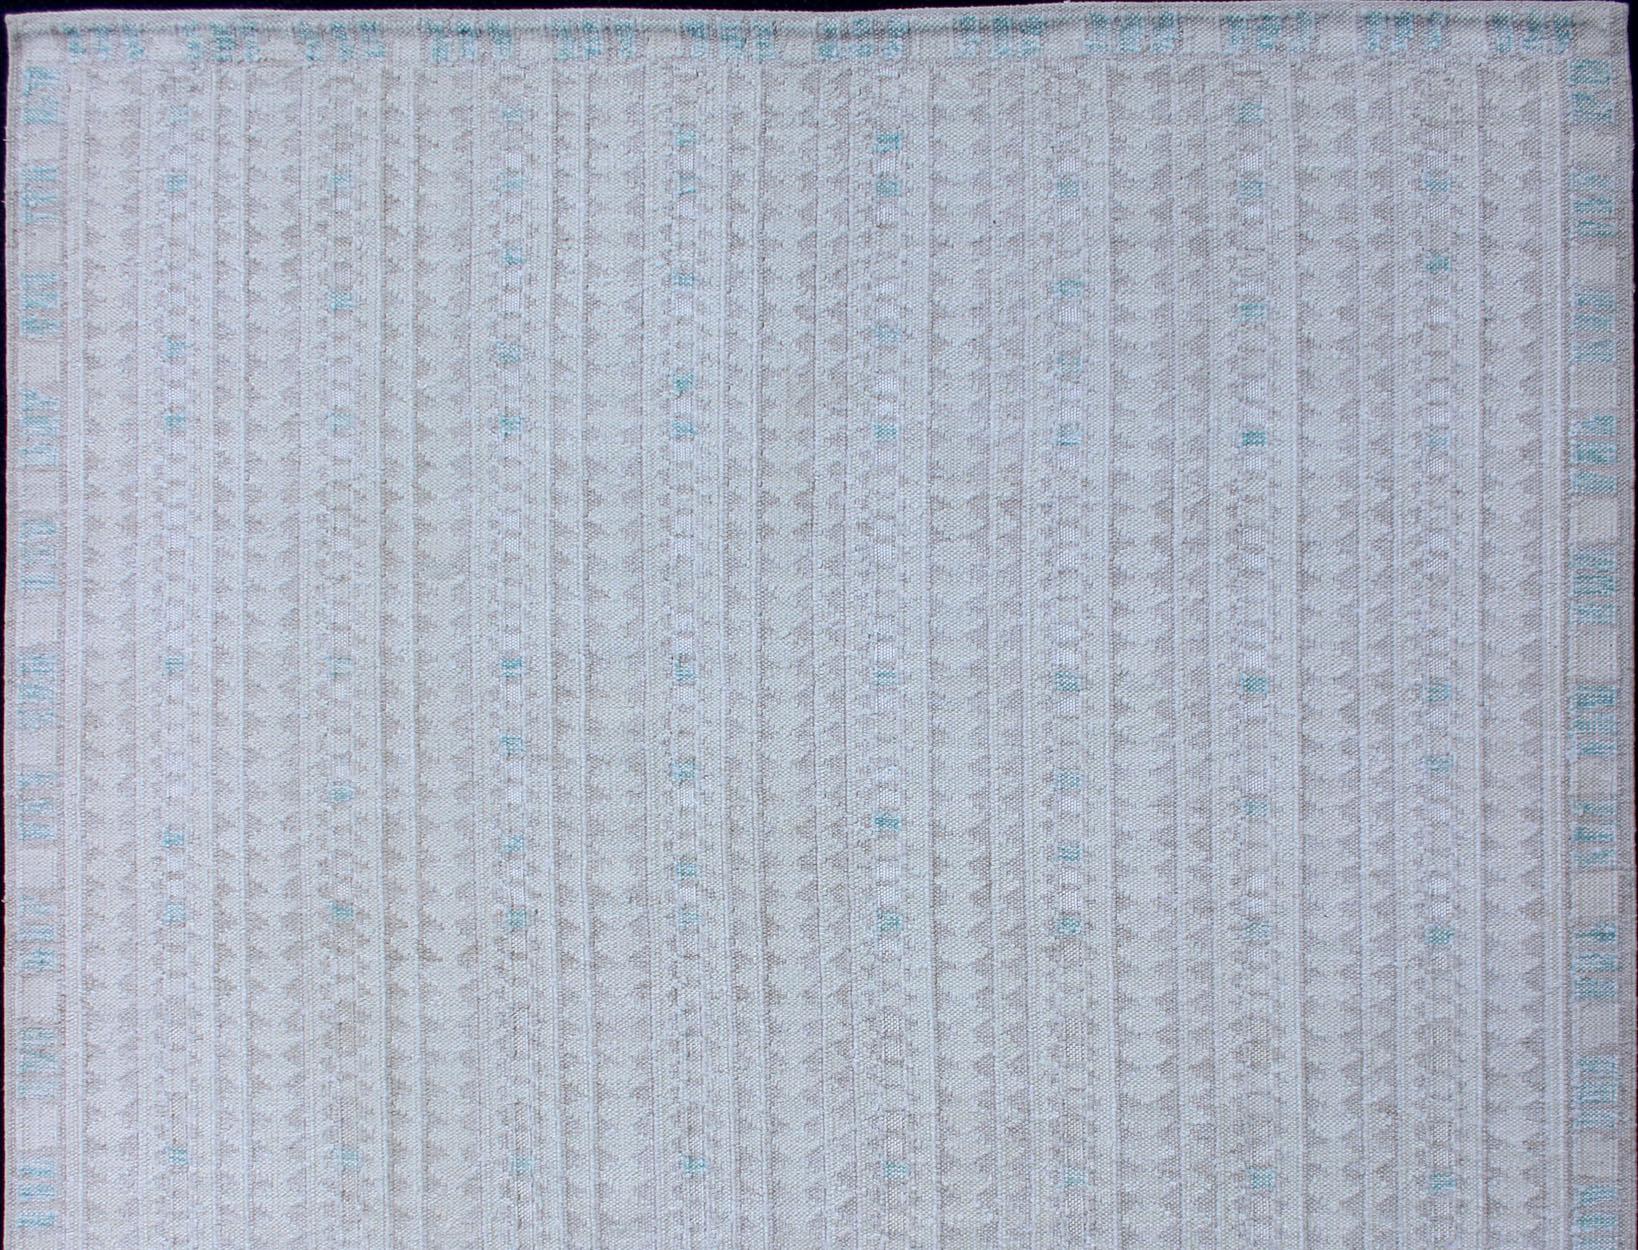 Moderner skandinavischer/schwedischer Teppich mit minimalistischem geometrischem Design in pastellfarbenen und neutralen Farben. Teppich KHN-1038, moderner Teppich, moderner skandinavischer Teppich

Dieser Teppich mit skandinavischem